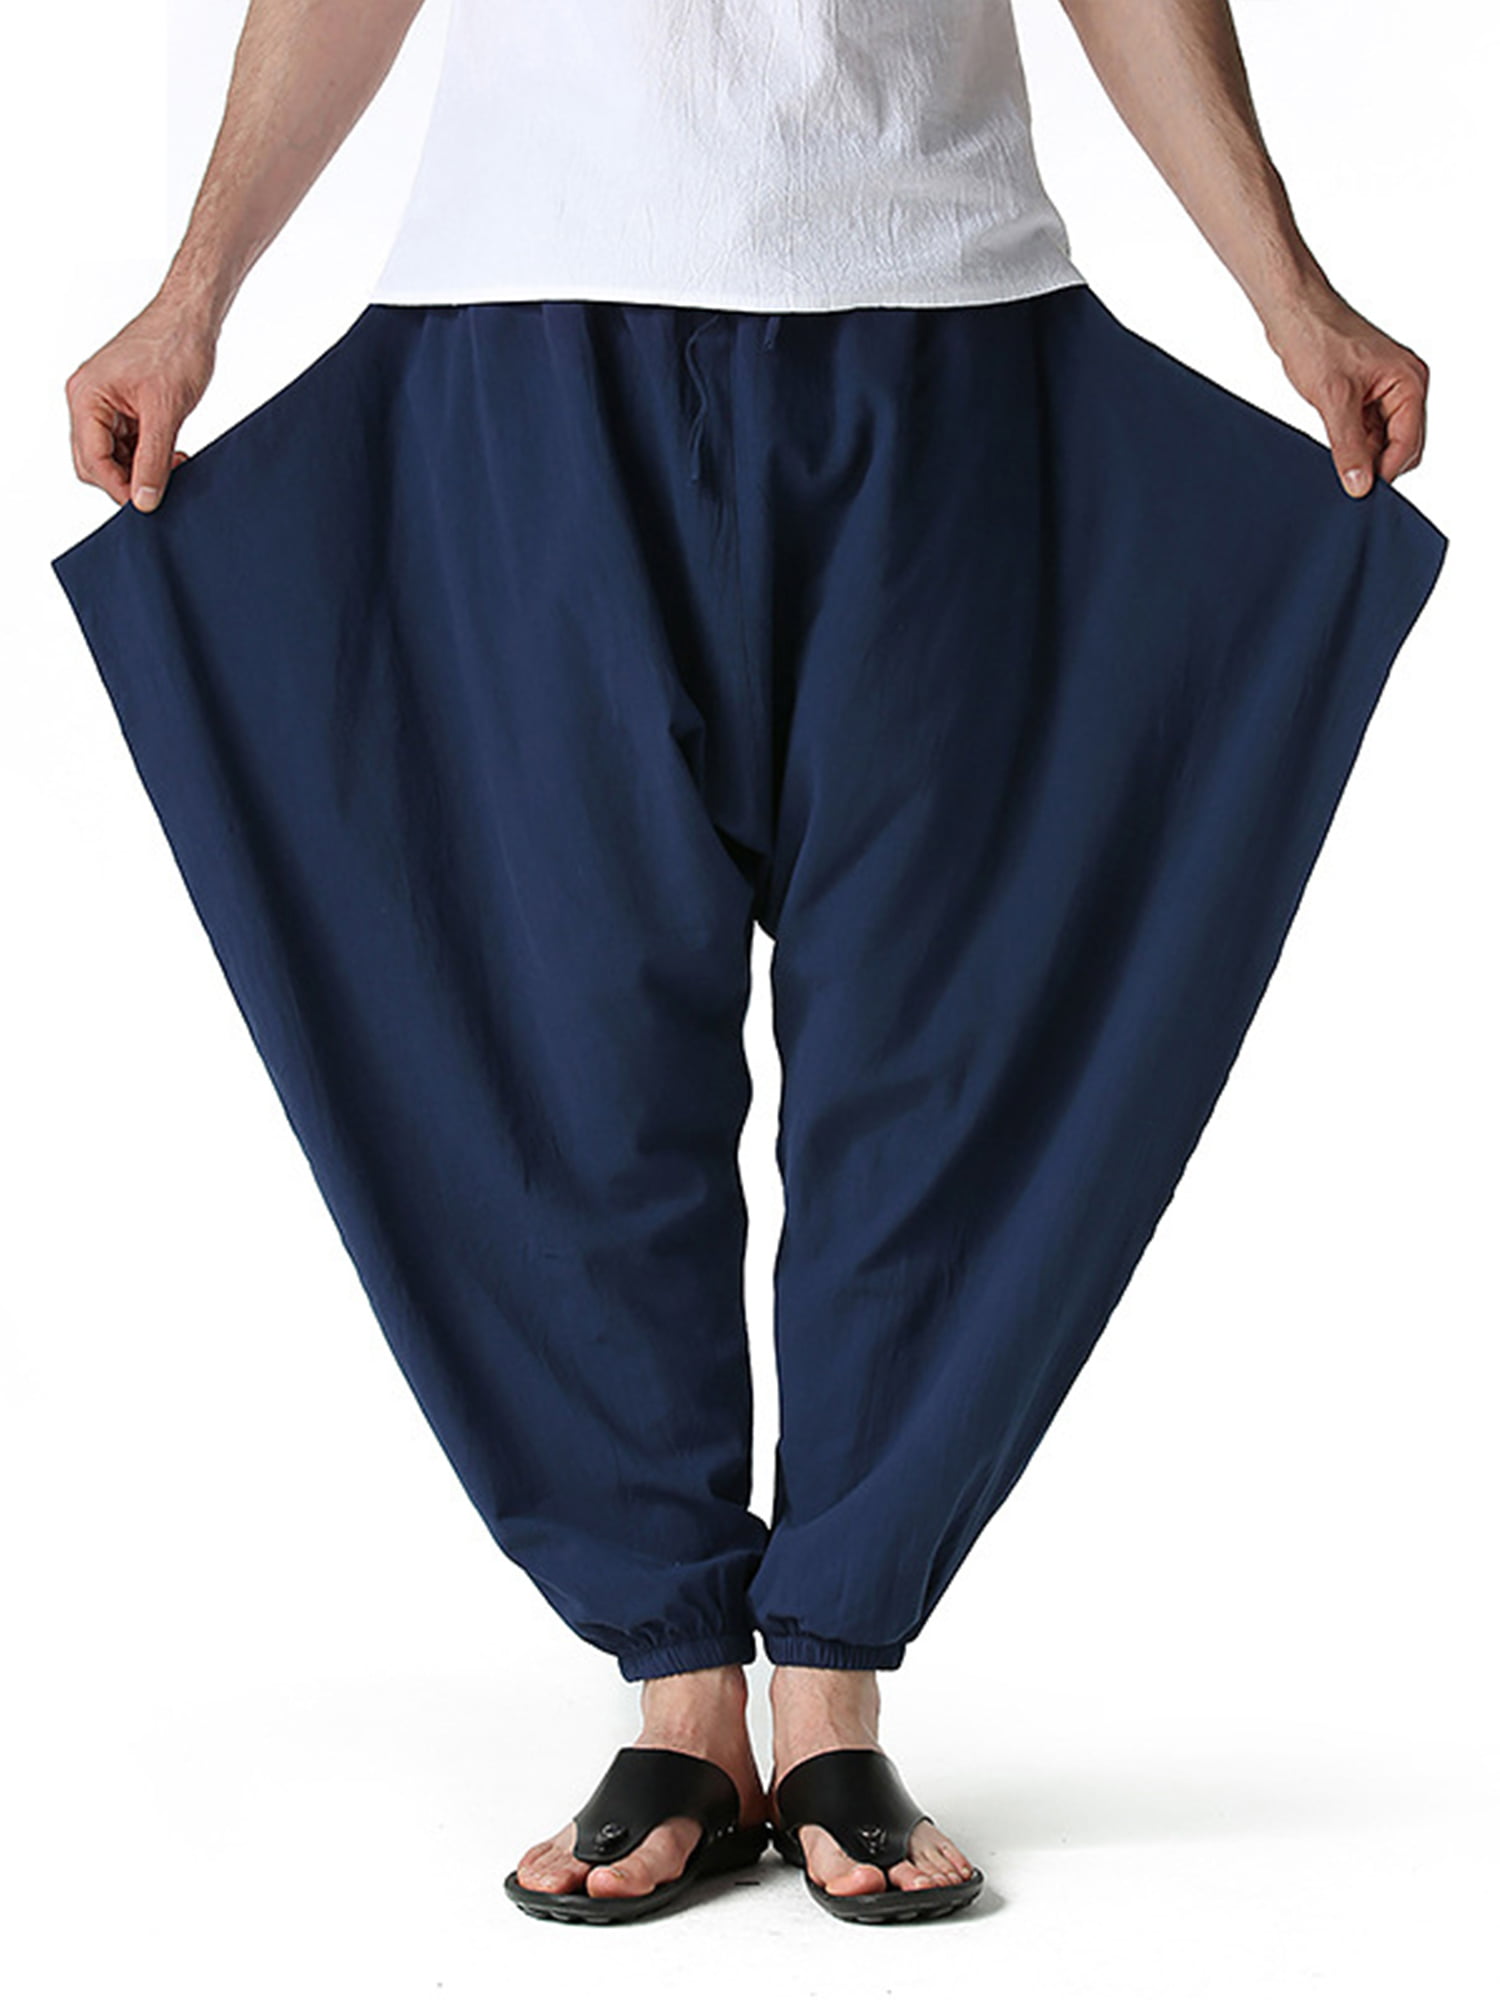 Women Men Solid Color Harem Trouser Long Pants Baggy Yoga Dance Sports Trousers 